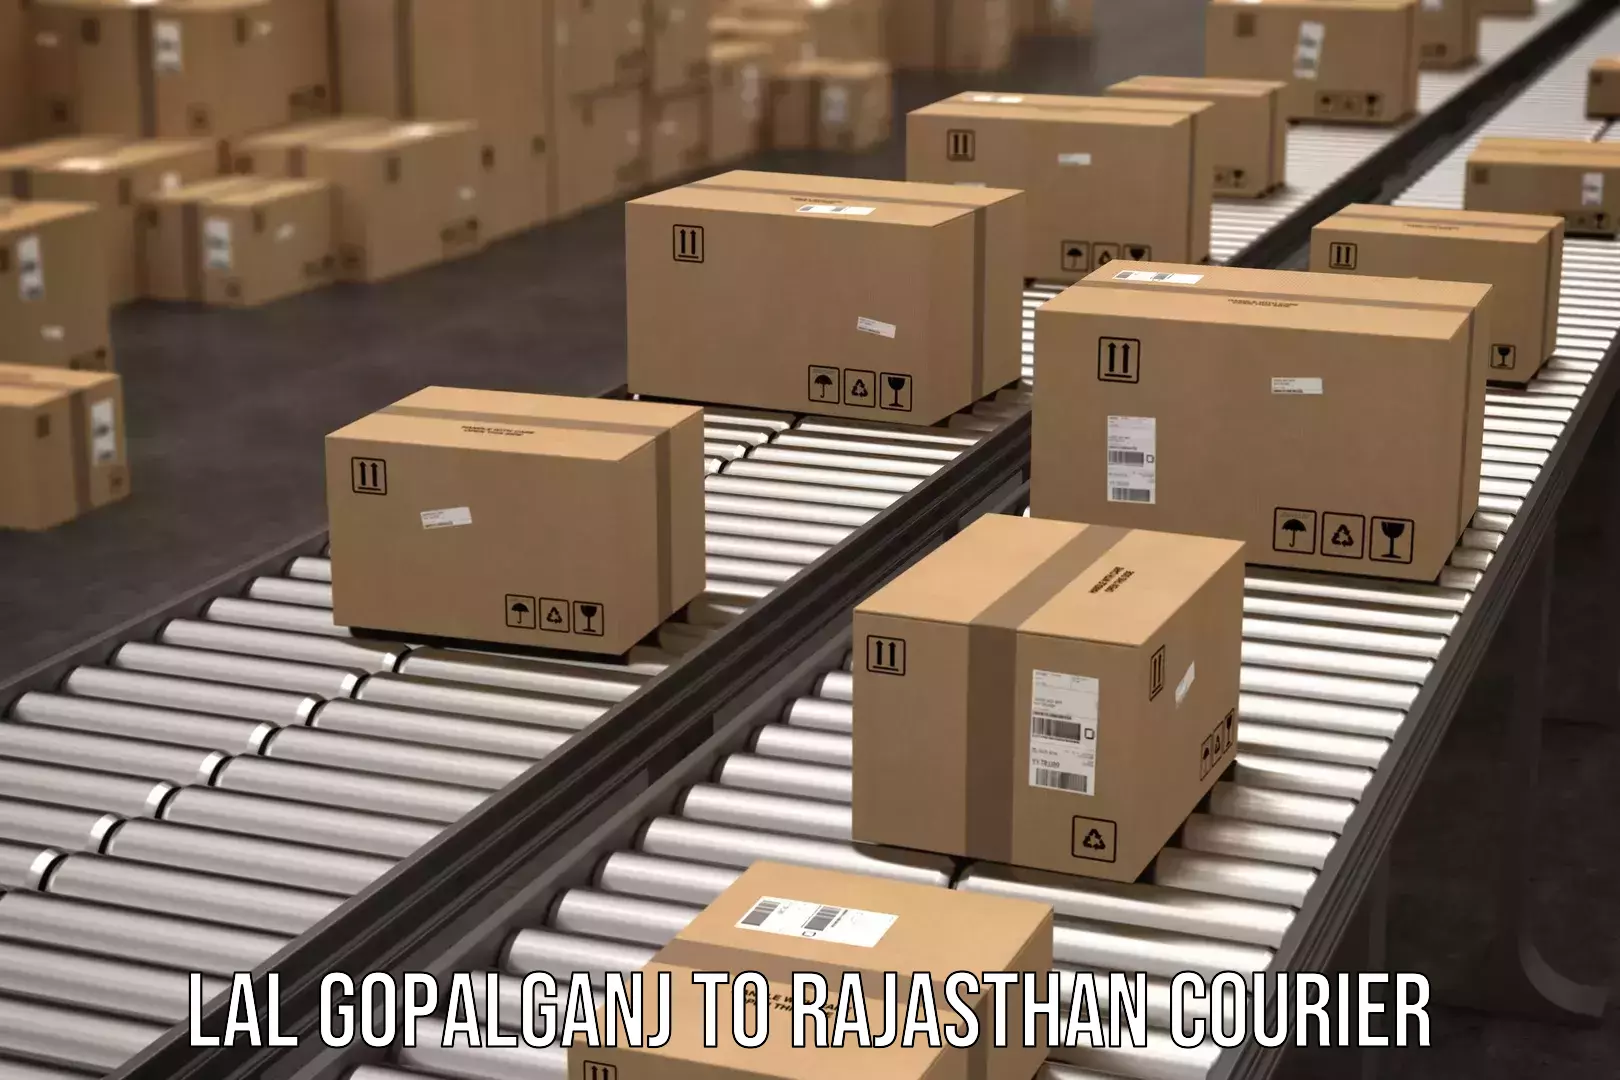 Courier service comparison Lal Gopalganj to Parbatsar